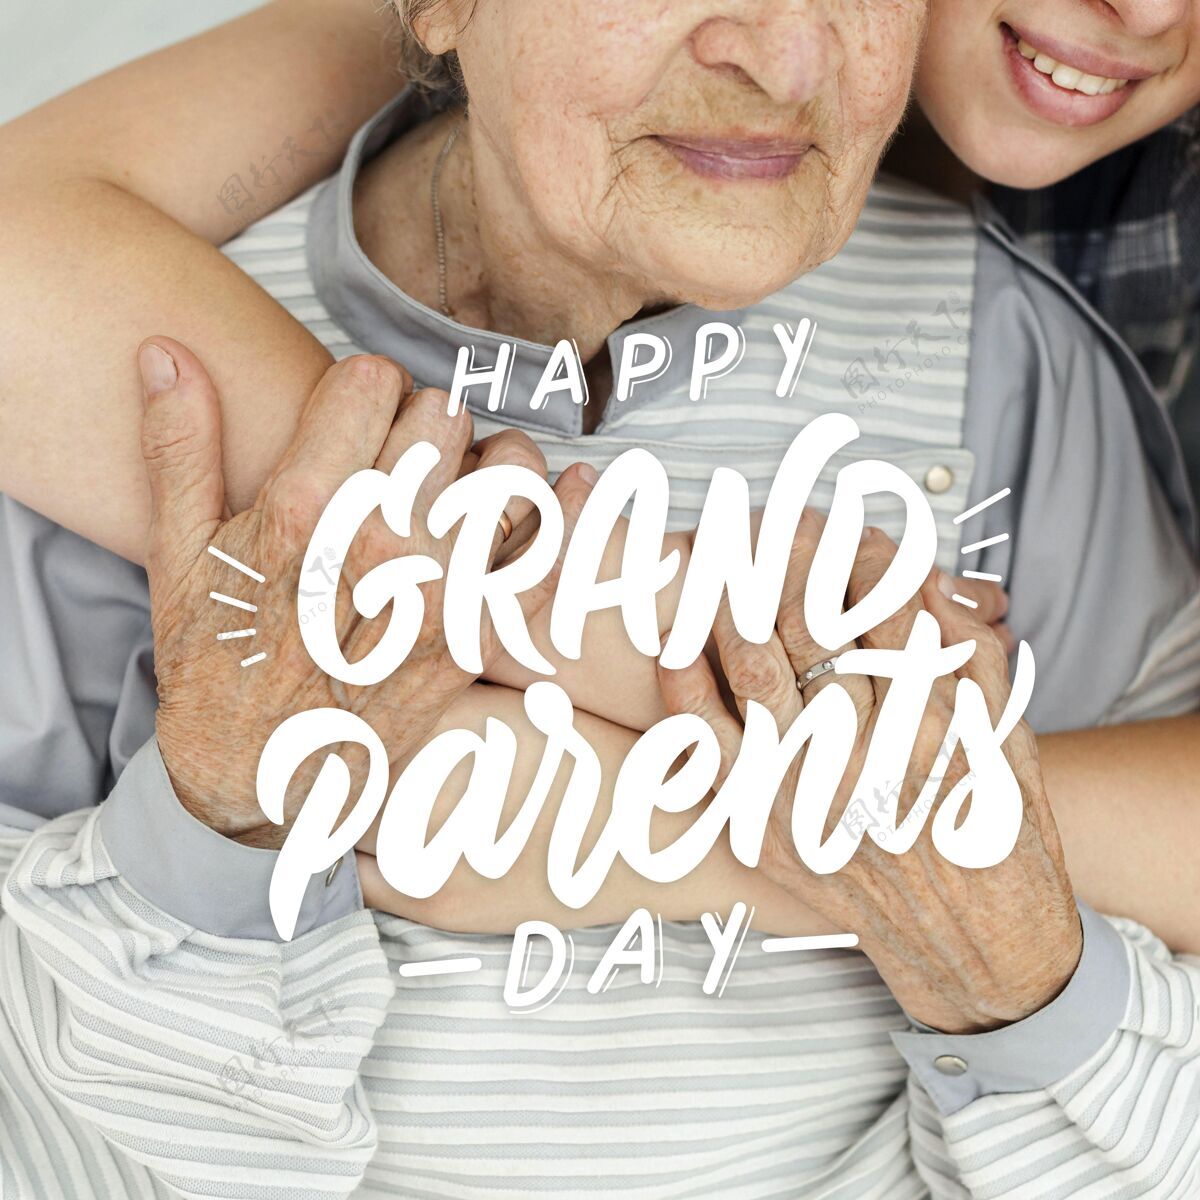 信息奶奶和孙女庆祝爷爷奶奶节爱敬佩老人